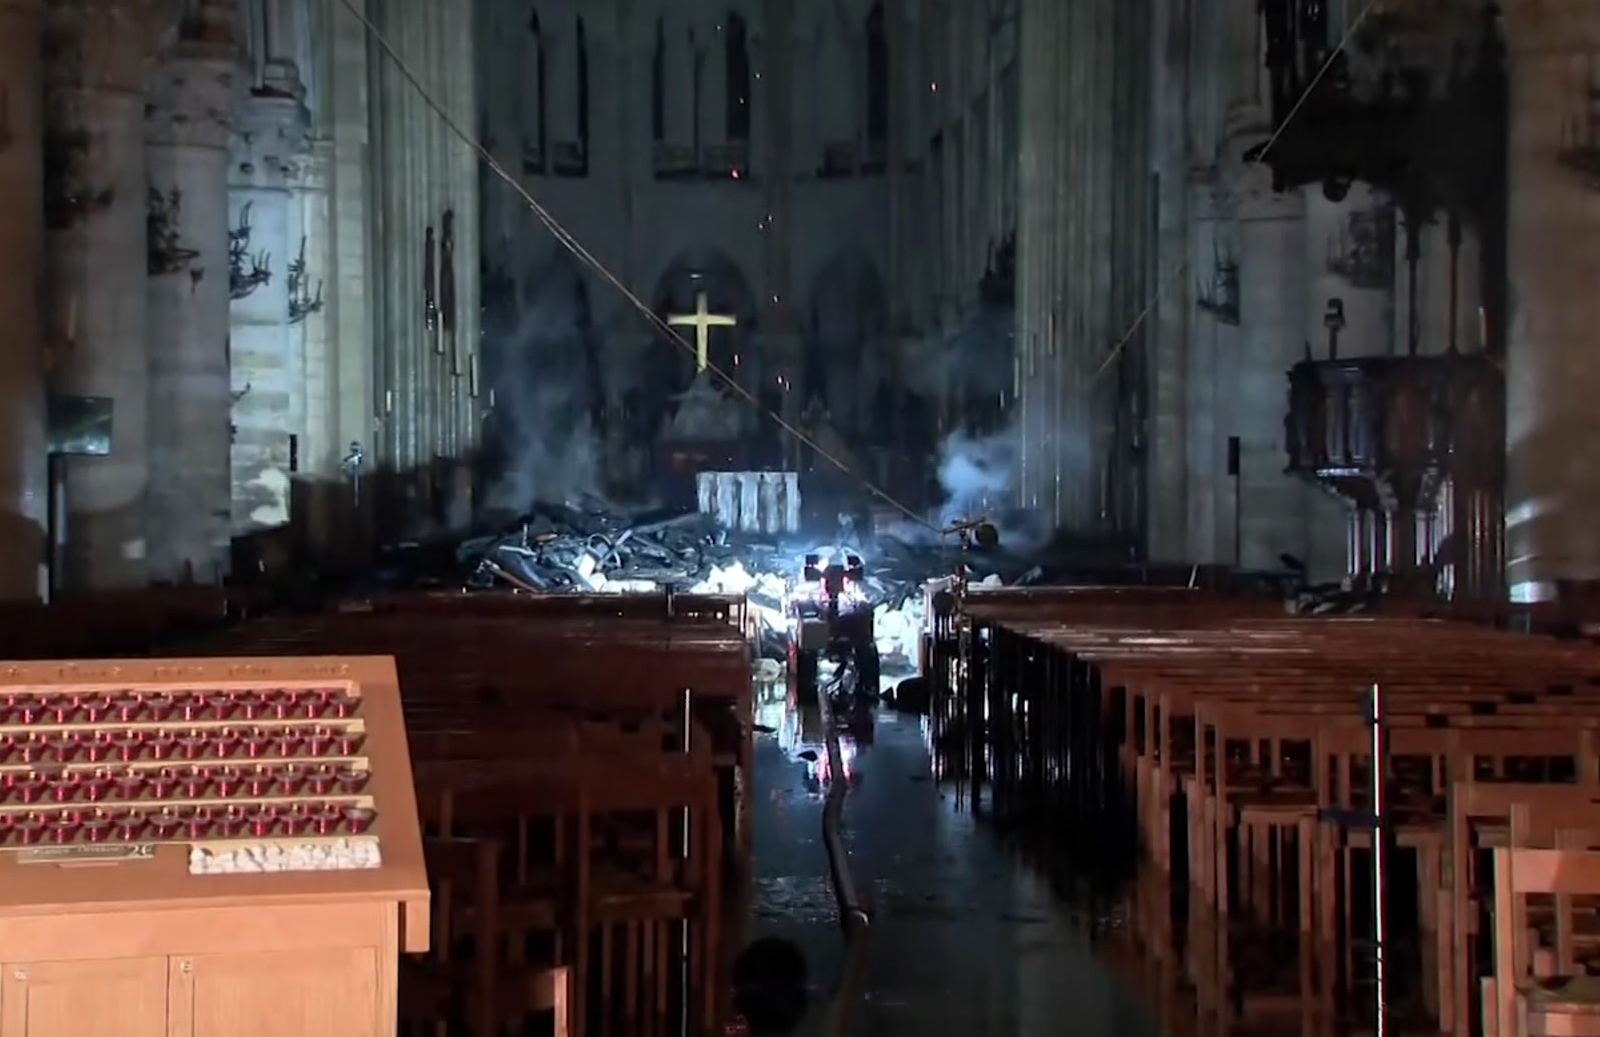 Pařížská katedrála Notre-Dame po ničivém požáru